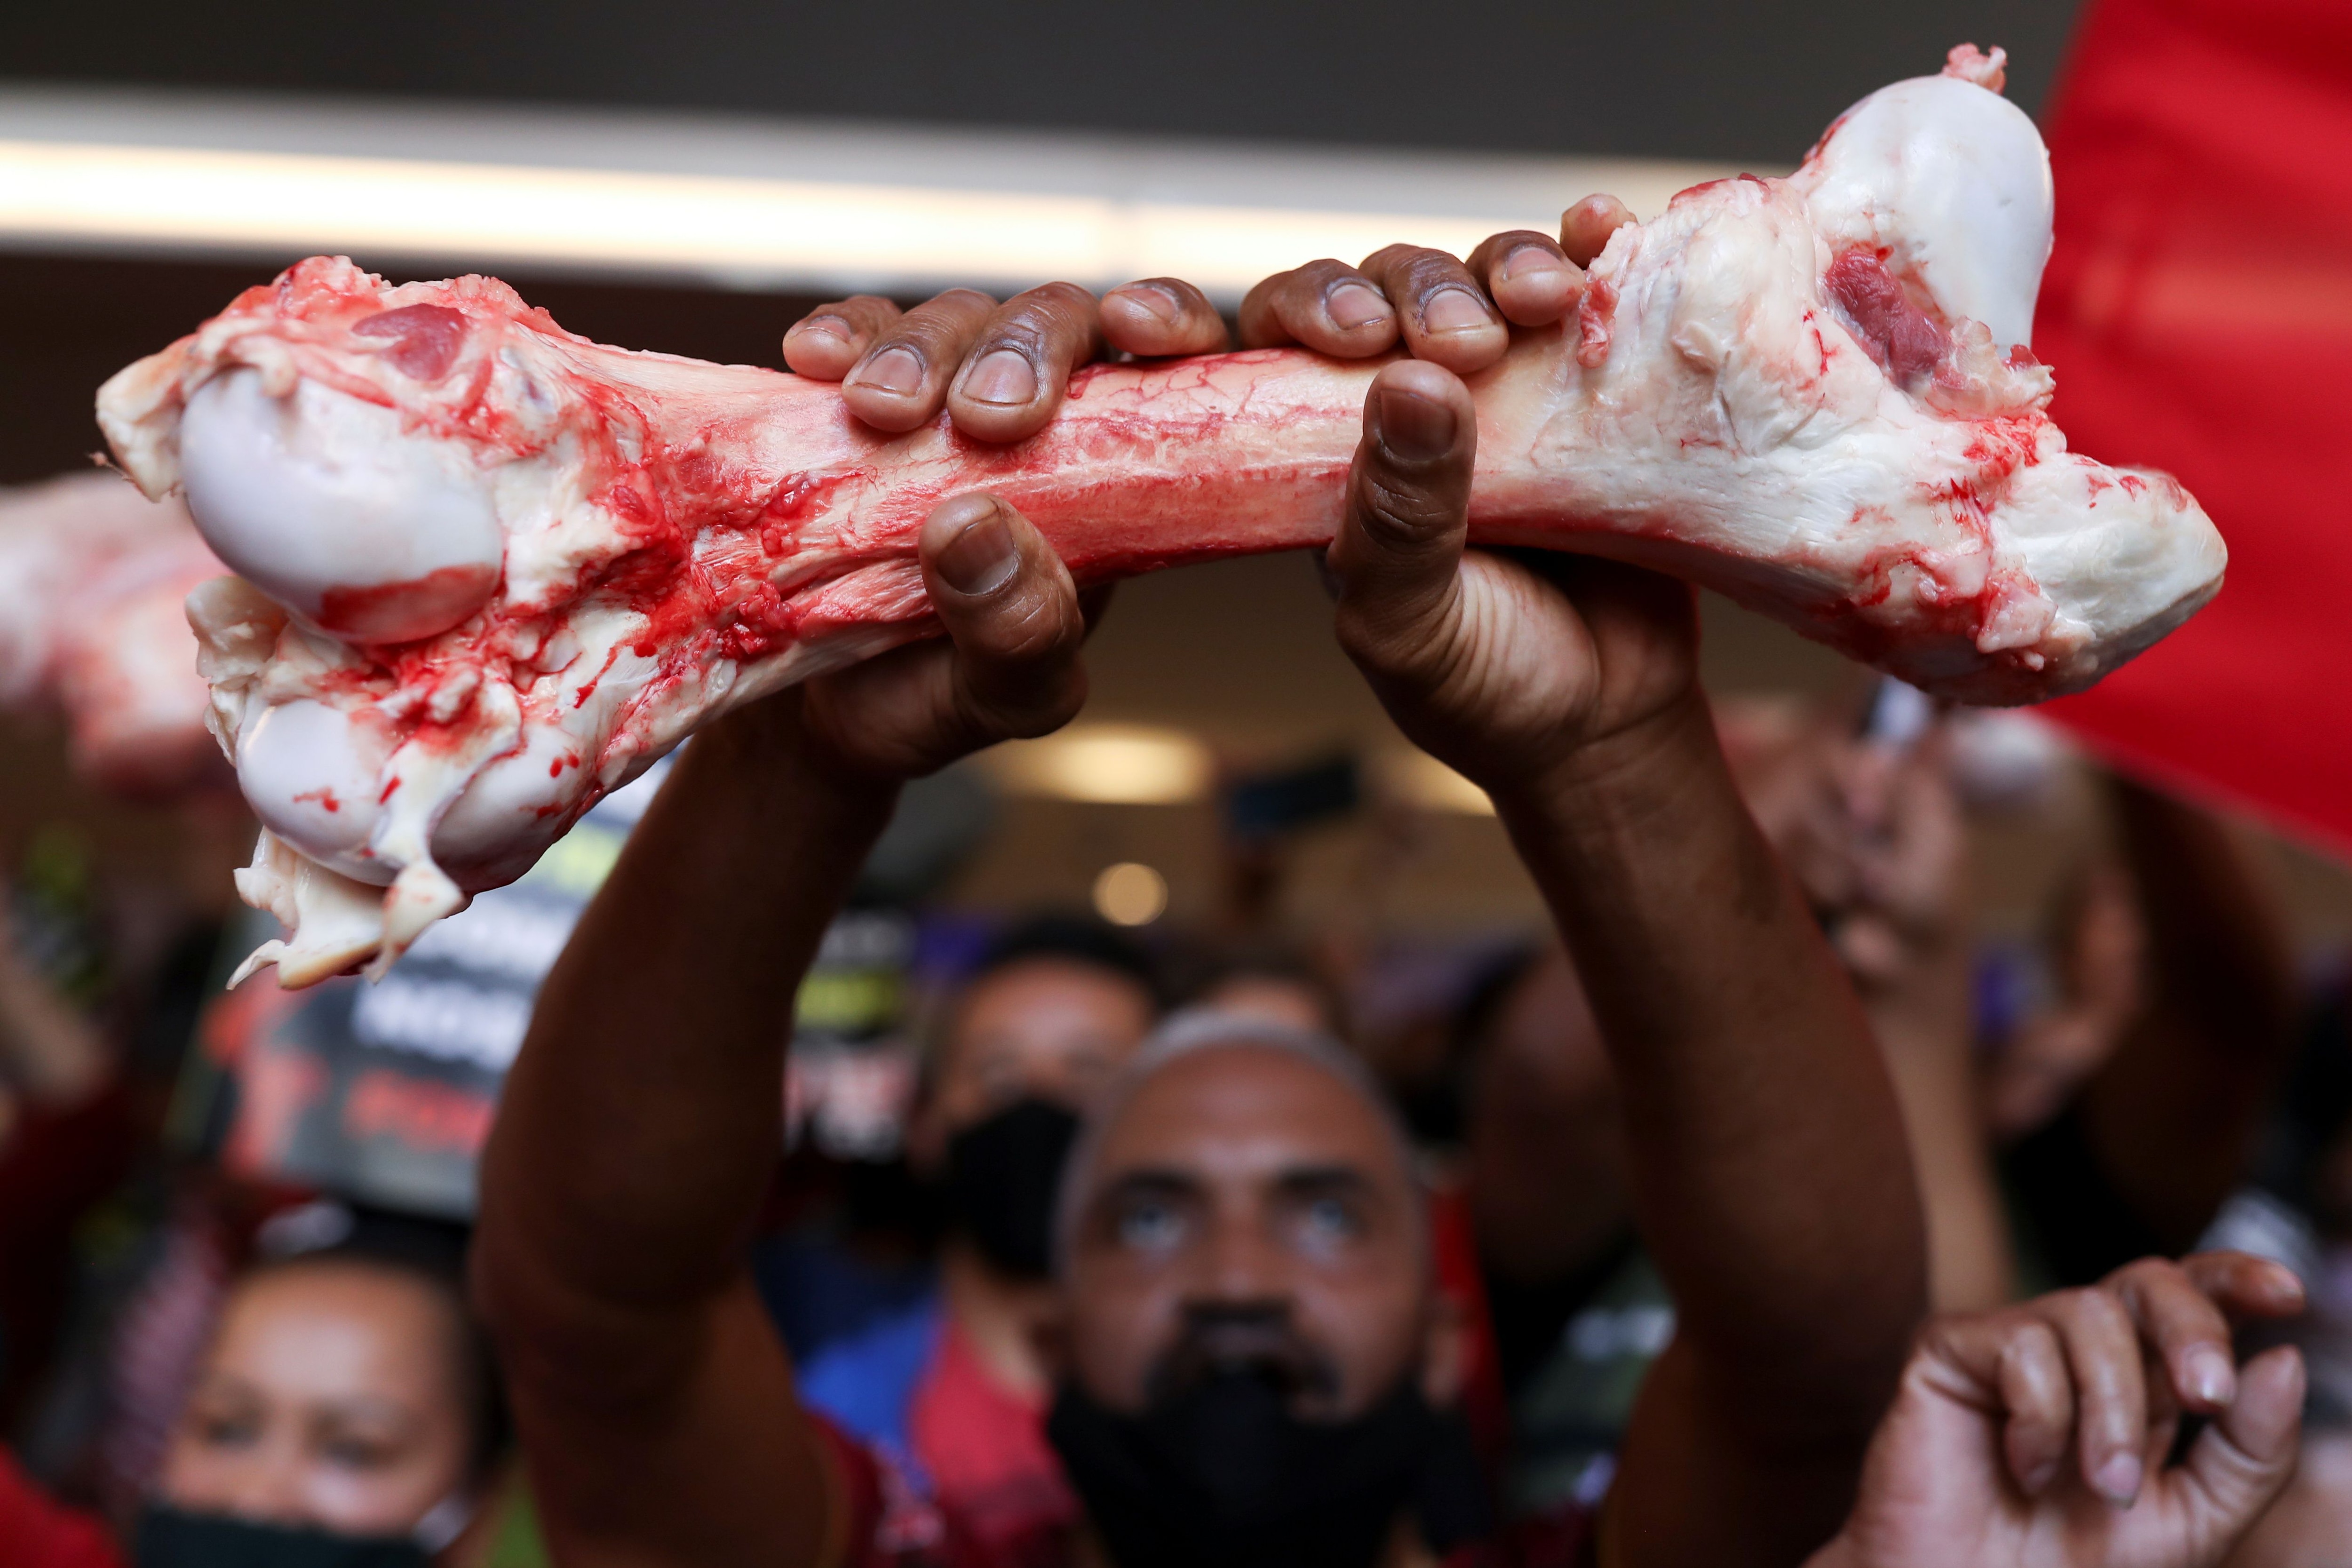 Un hombre sostiene un hueso mientras los manifestantes del Movimiento de Trabajadores sin Techo (MTST) protestan en la Bolsa de Valores B3 de Brasil contra la inflación y el precio de los alimentos y otros artículos esenciales en el centro de Sao Paulo, Brasil, 23 de septiembre de 2021. (REUTERS/Amanda Perobelli)